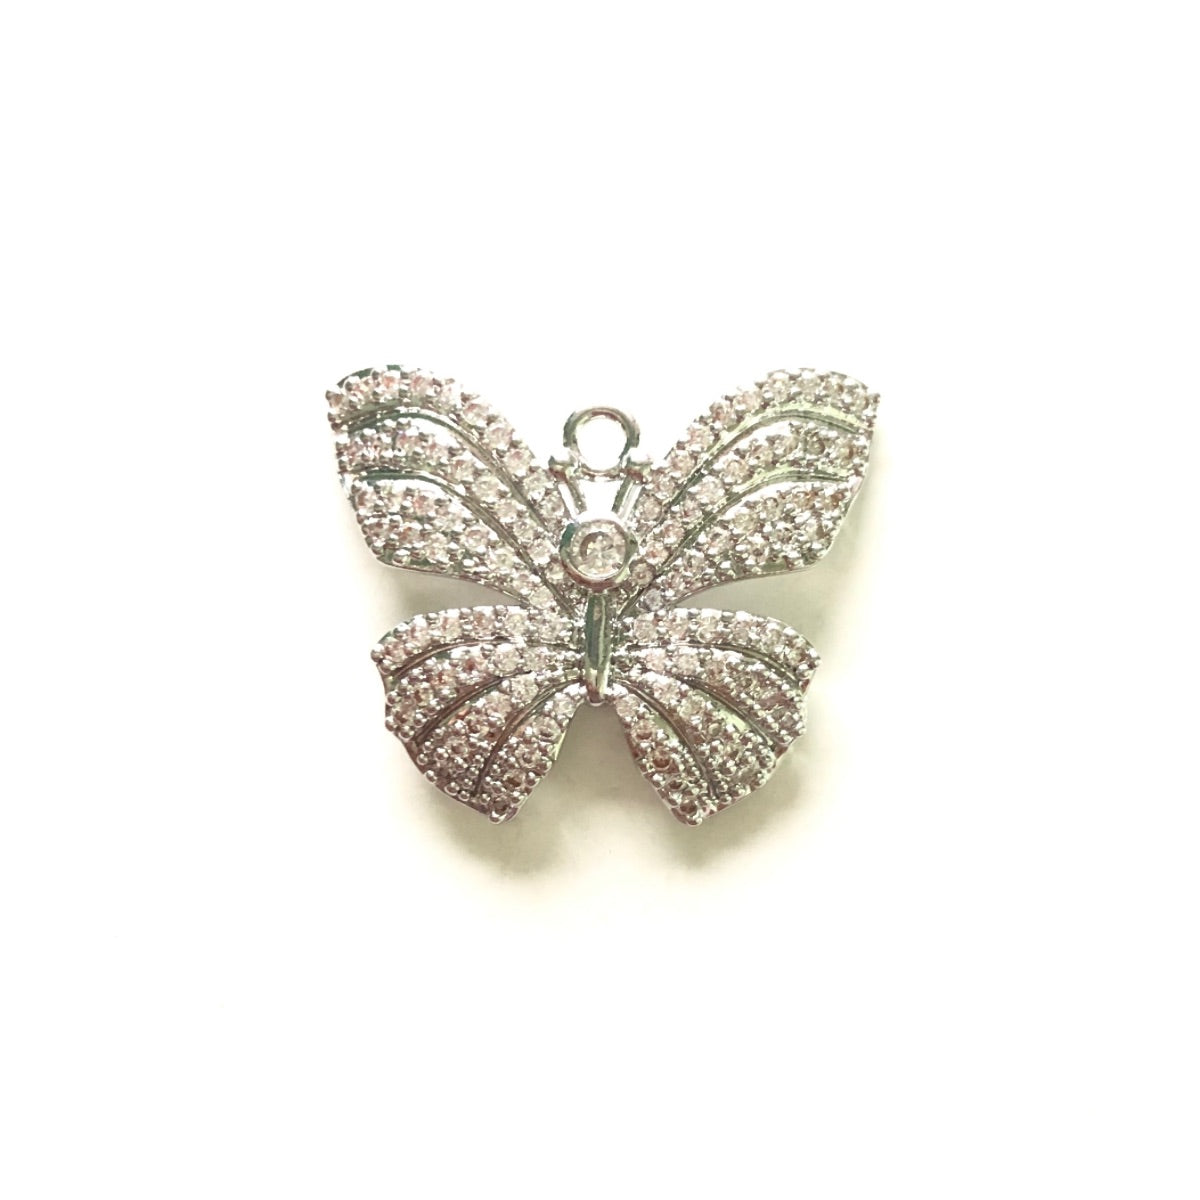 10pcs/lot 24.8*20.4mm CZ Paved Butterfly Charms Silver CZ Paved Charms Butterflies Charms Beads Beyond